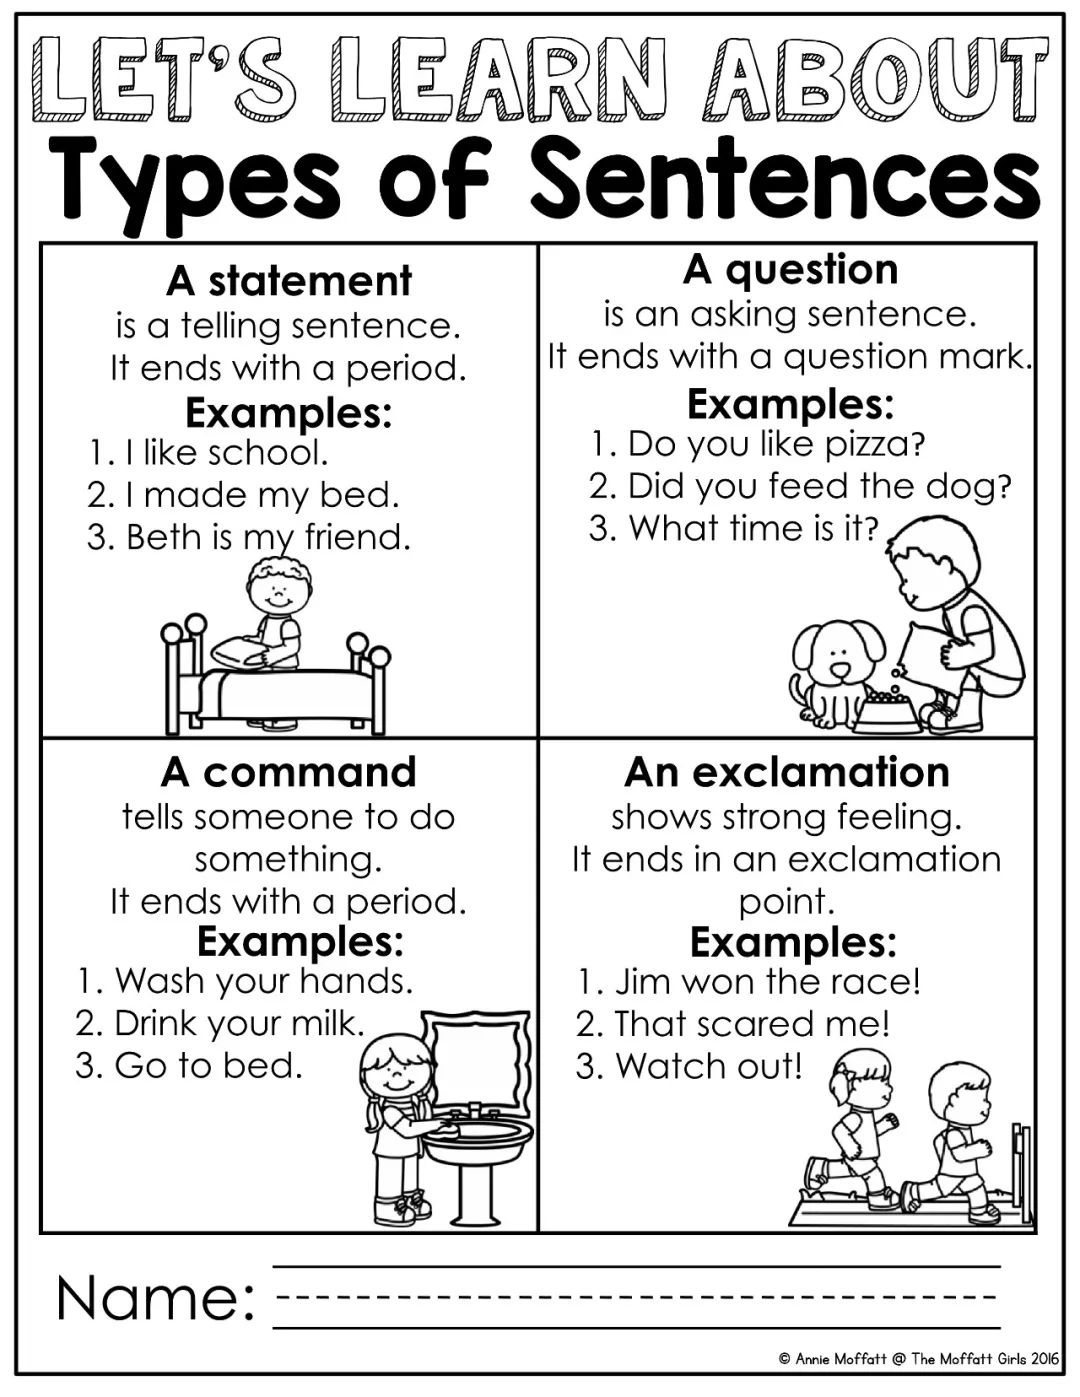 四种常见的句子语法